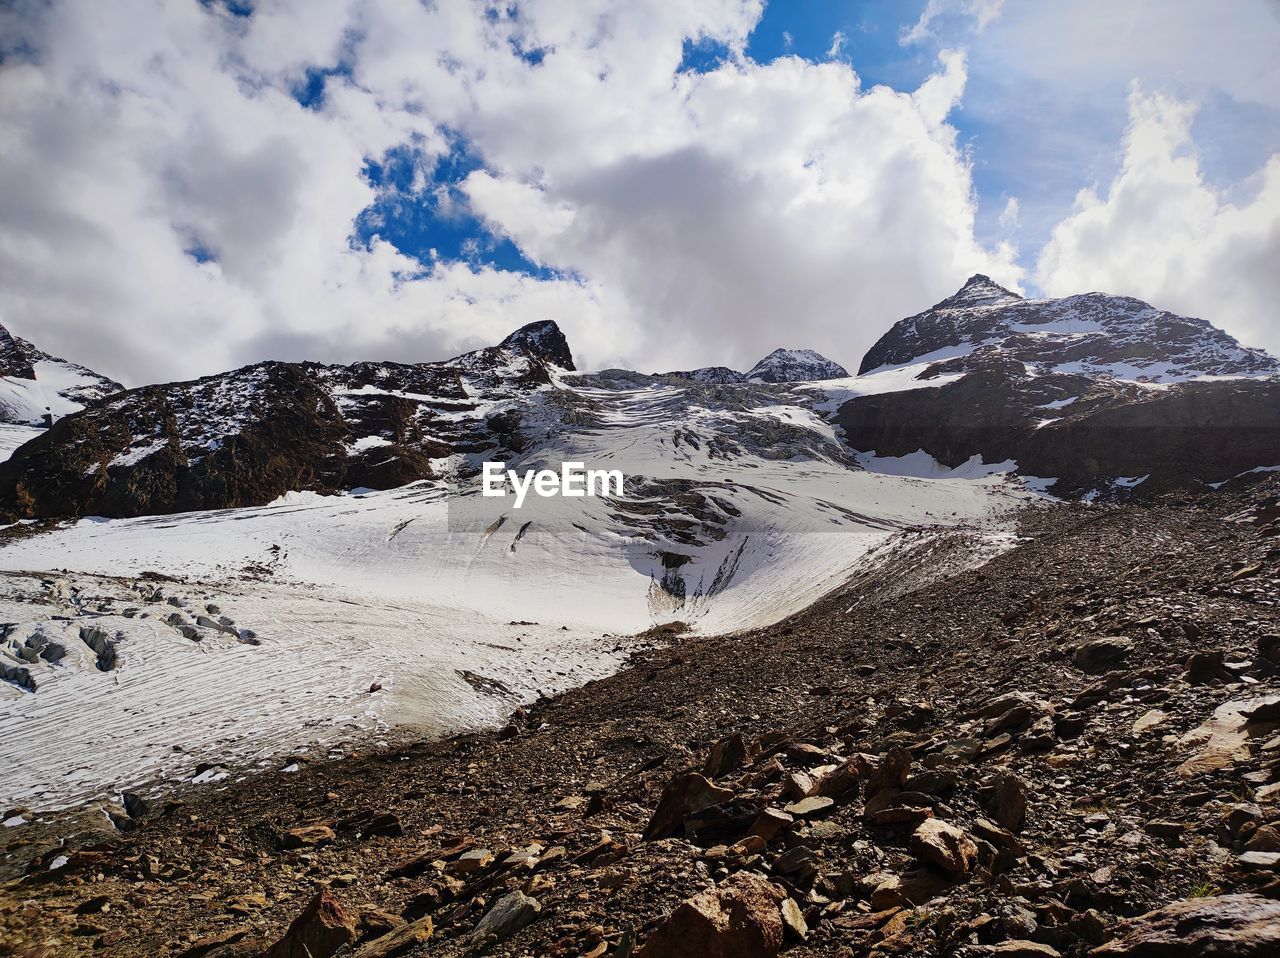 Gigantic crevasses of the palla bianca glacier